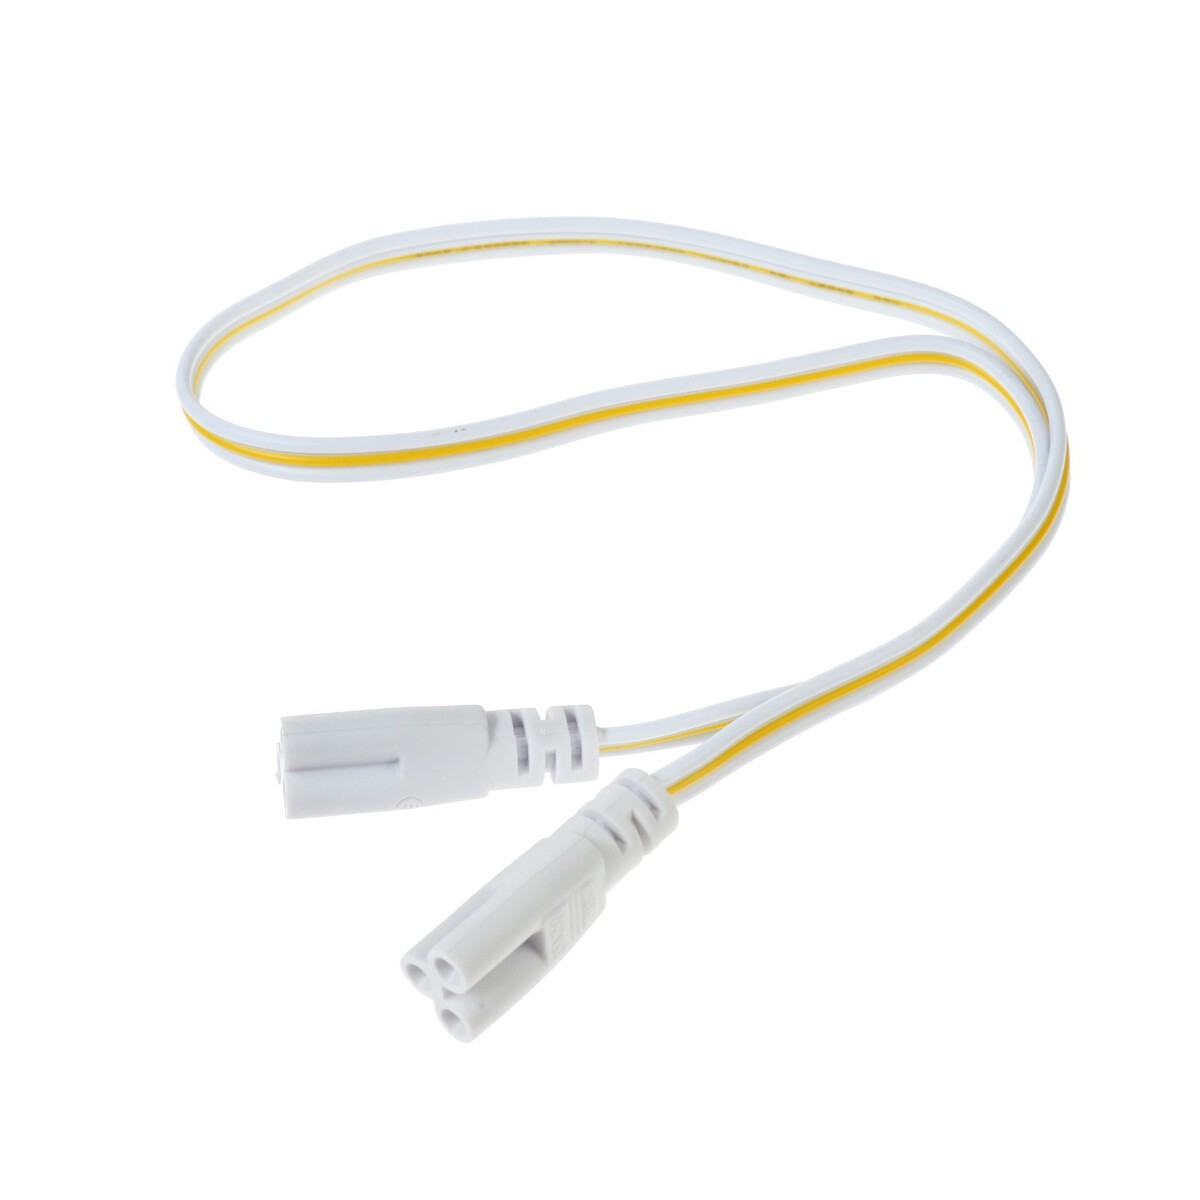 Провод соединительный для светильников, разъем l/n/g, 50 см, белый провод соединительный для светильников разъем l n g 50 см белый